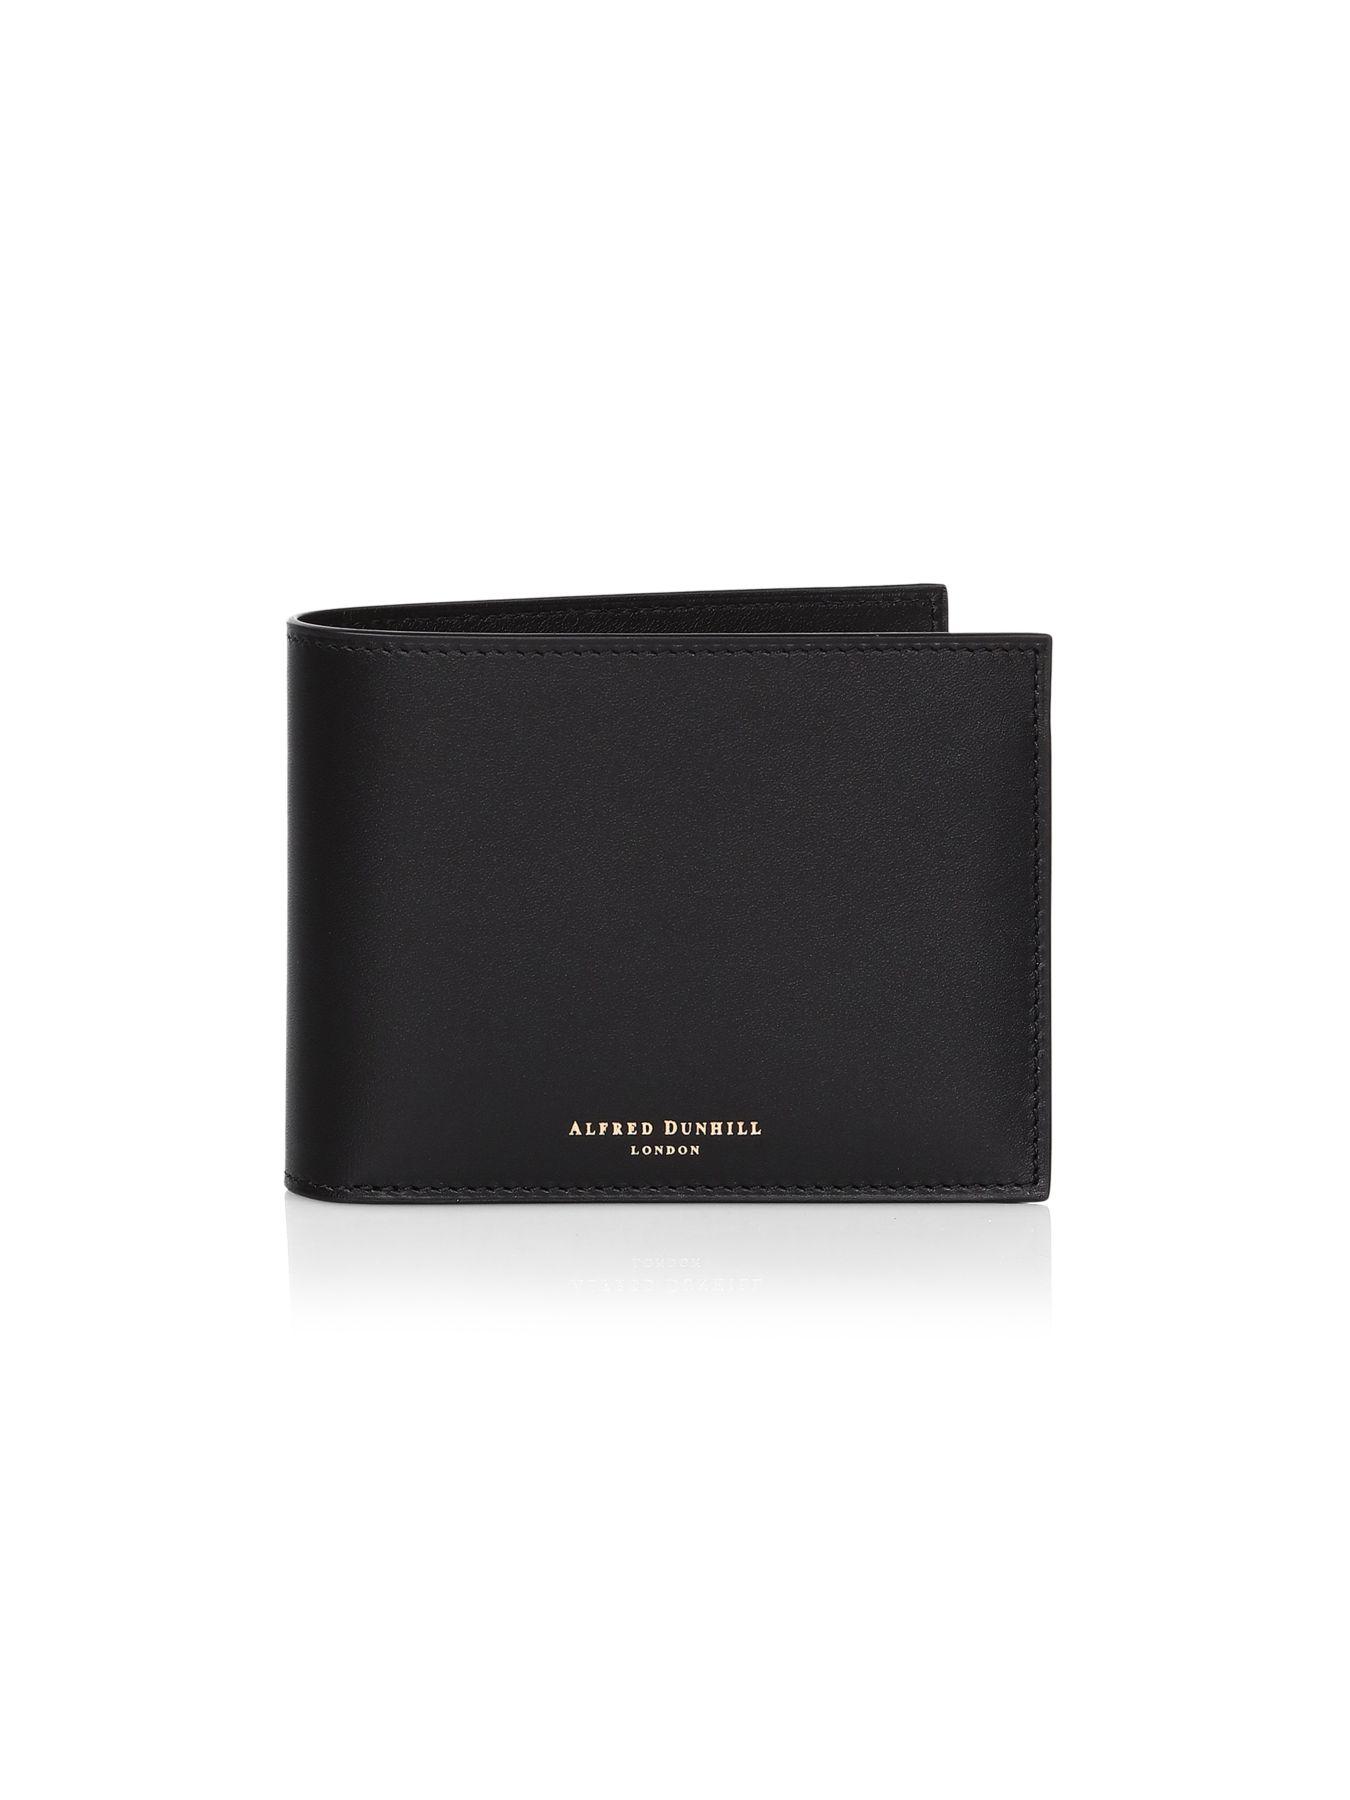 Dunhill Duke Leather Billfold Wallet in Black for Men - Lyst